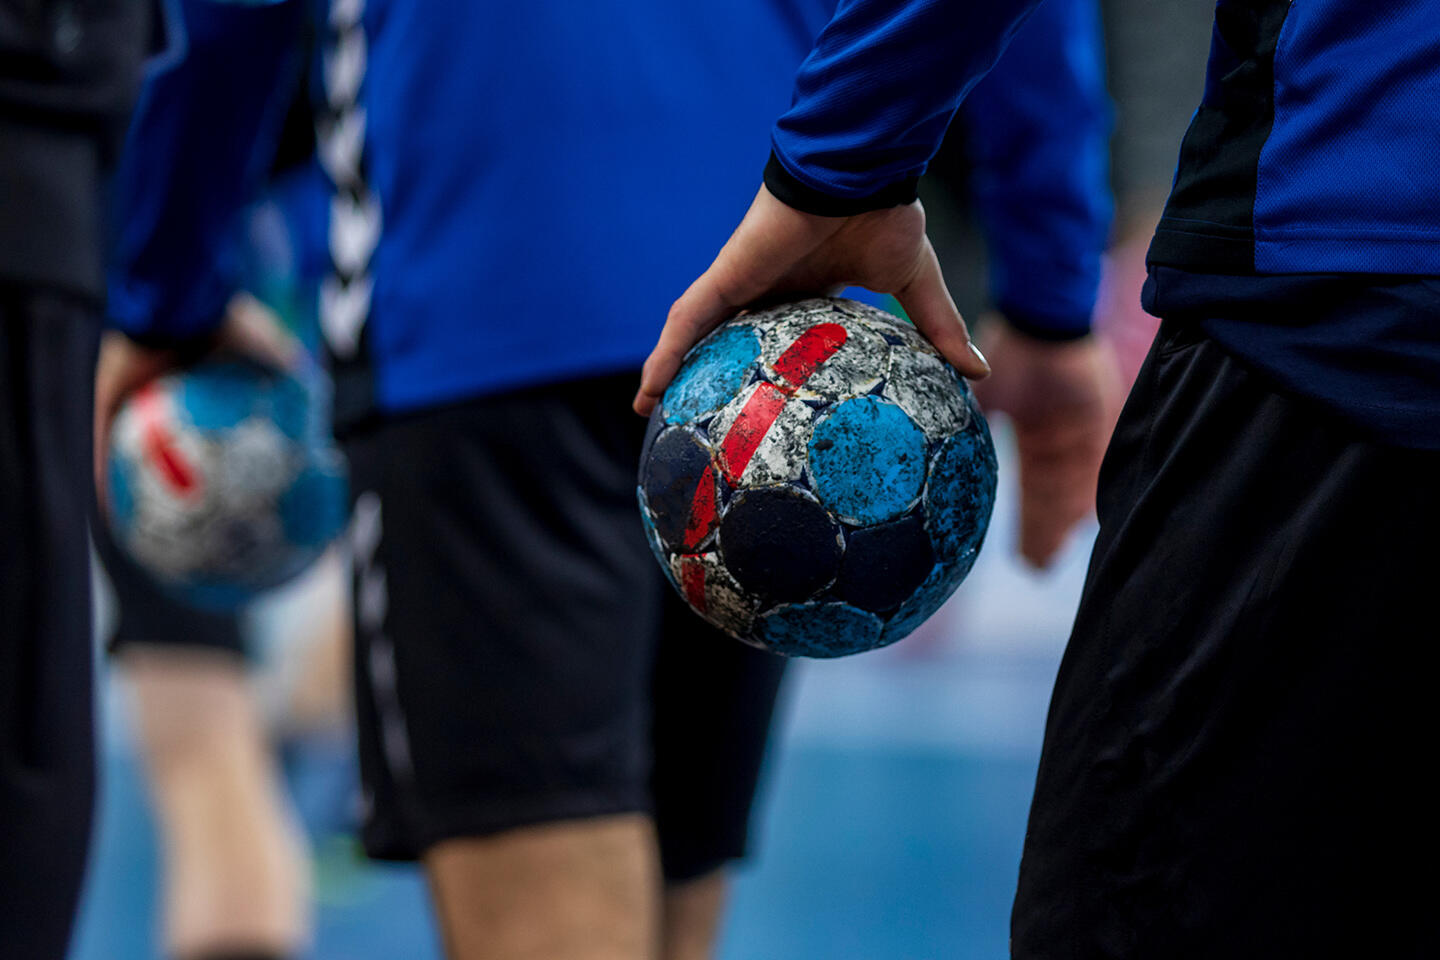 Handballspieler in Aktion, die abgenutzte Handbälle mit abblätternden Farben festhalten, was die Intensität und Leidenschaft des Sports symbolisiert, eine fesselnde Aktivität für Gäste, die in Aparthotels in der Nähe des Pierre-Mauroy-Stadions in Lille übernachten.